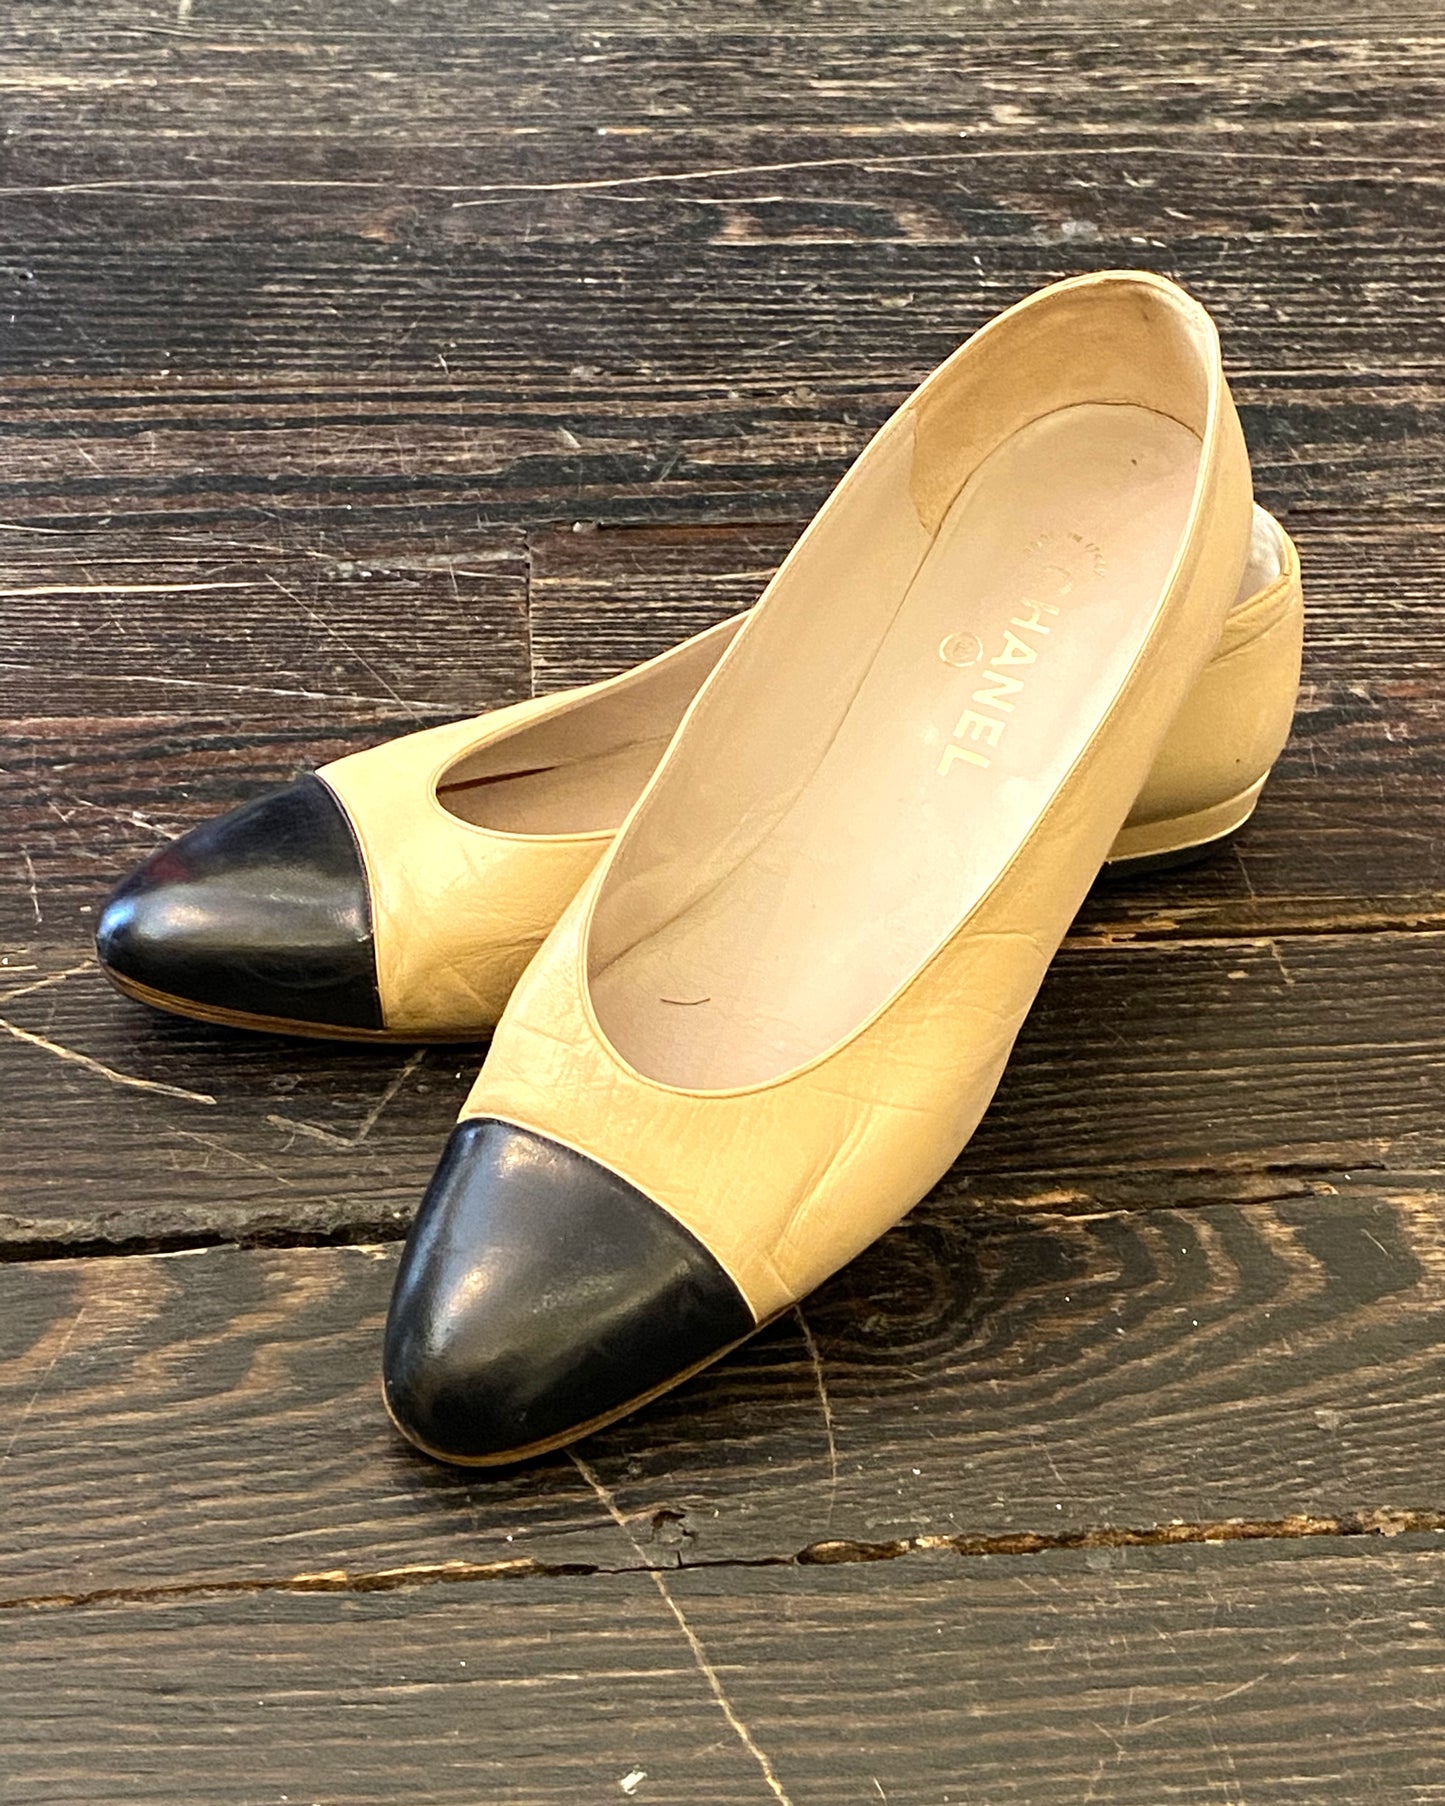 vintage chanel black dress shoes